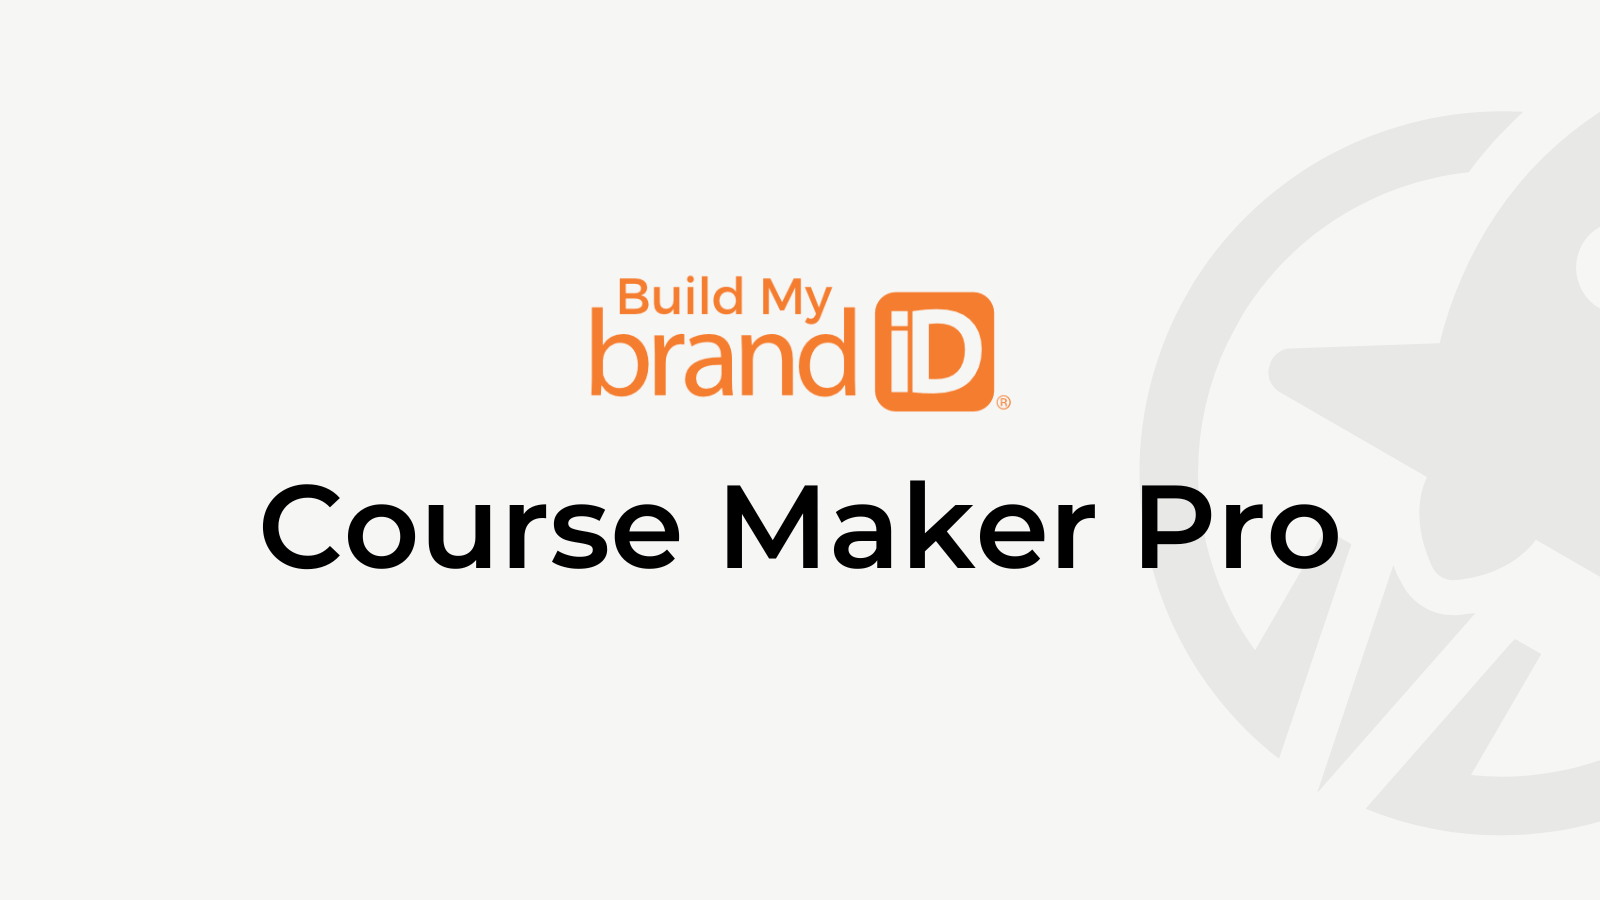 Course Maker Pro